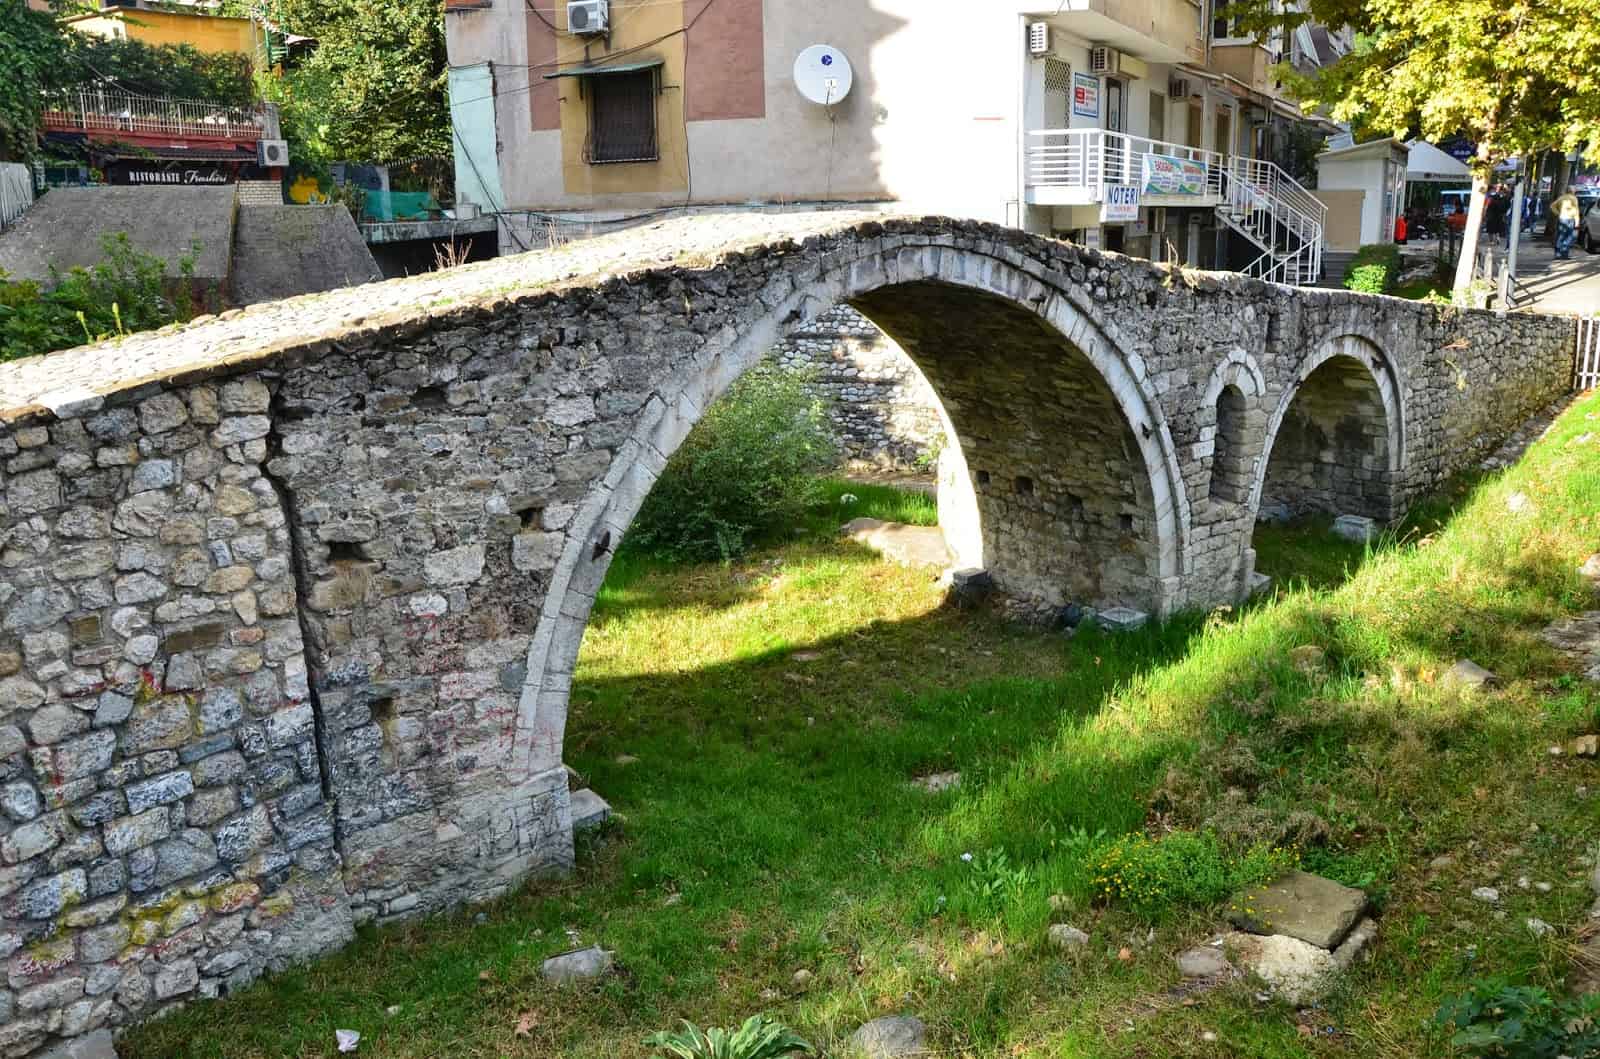 Tanner's Bridge in Tiranë, Albania